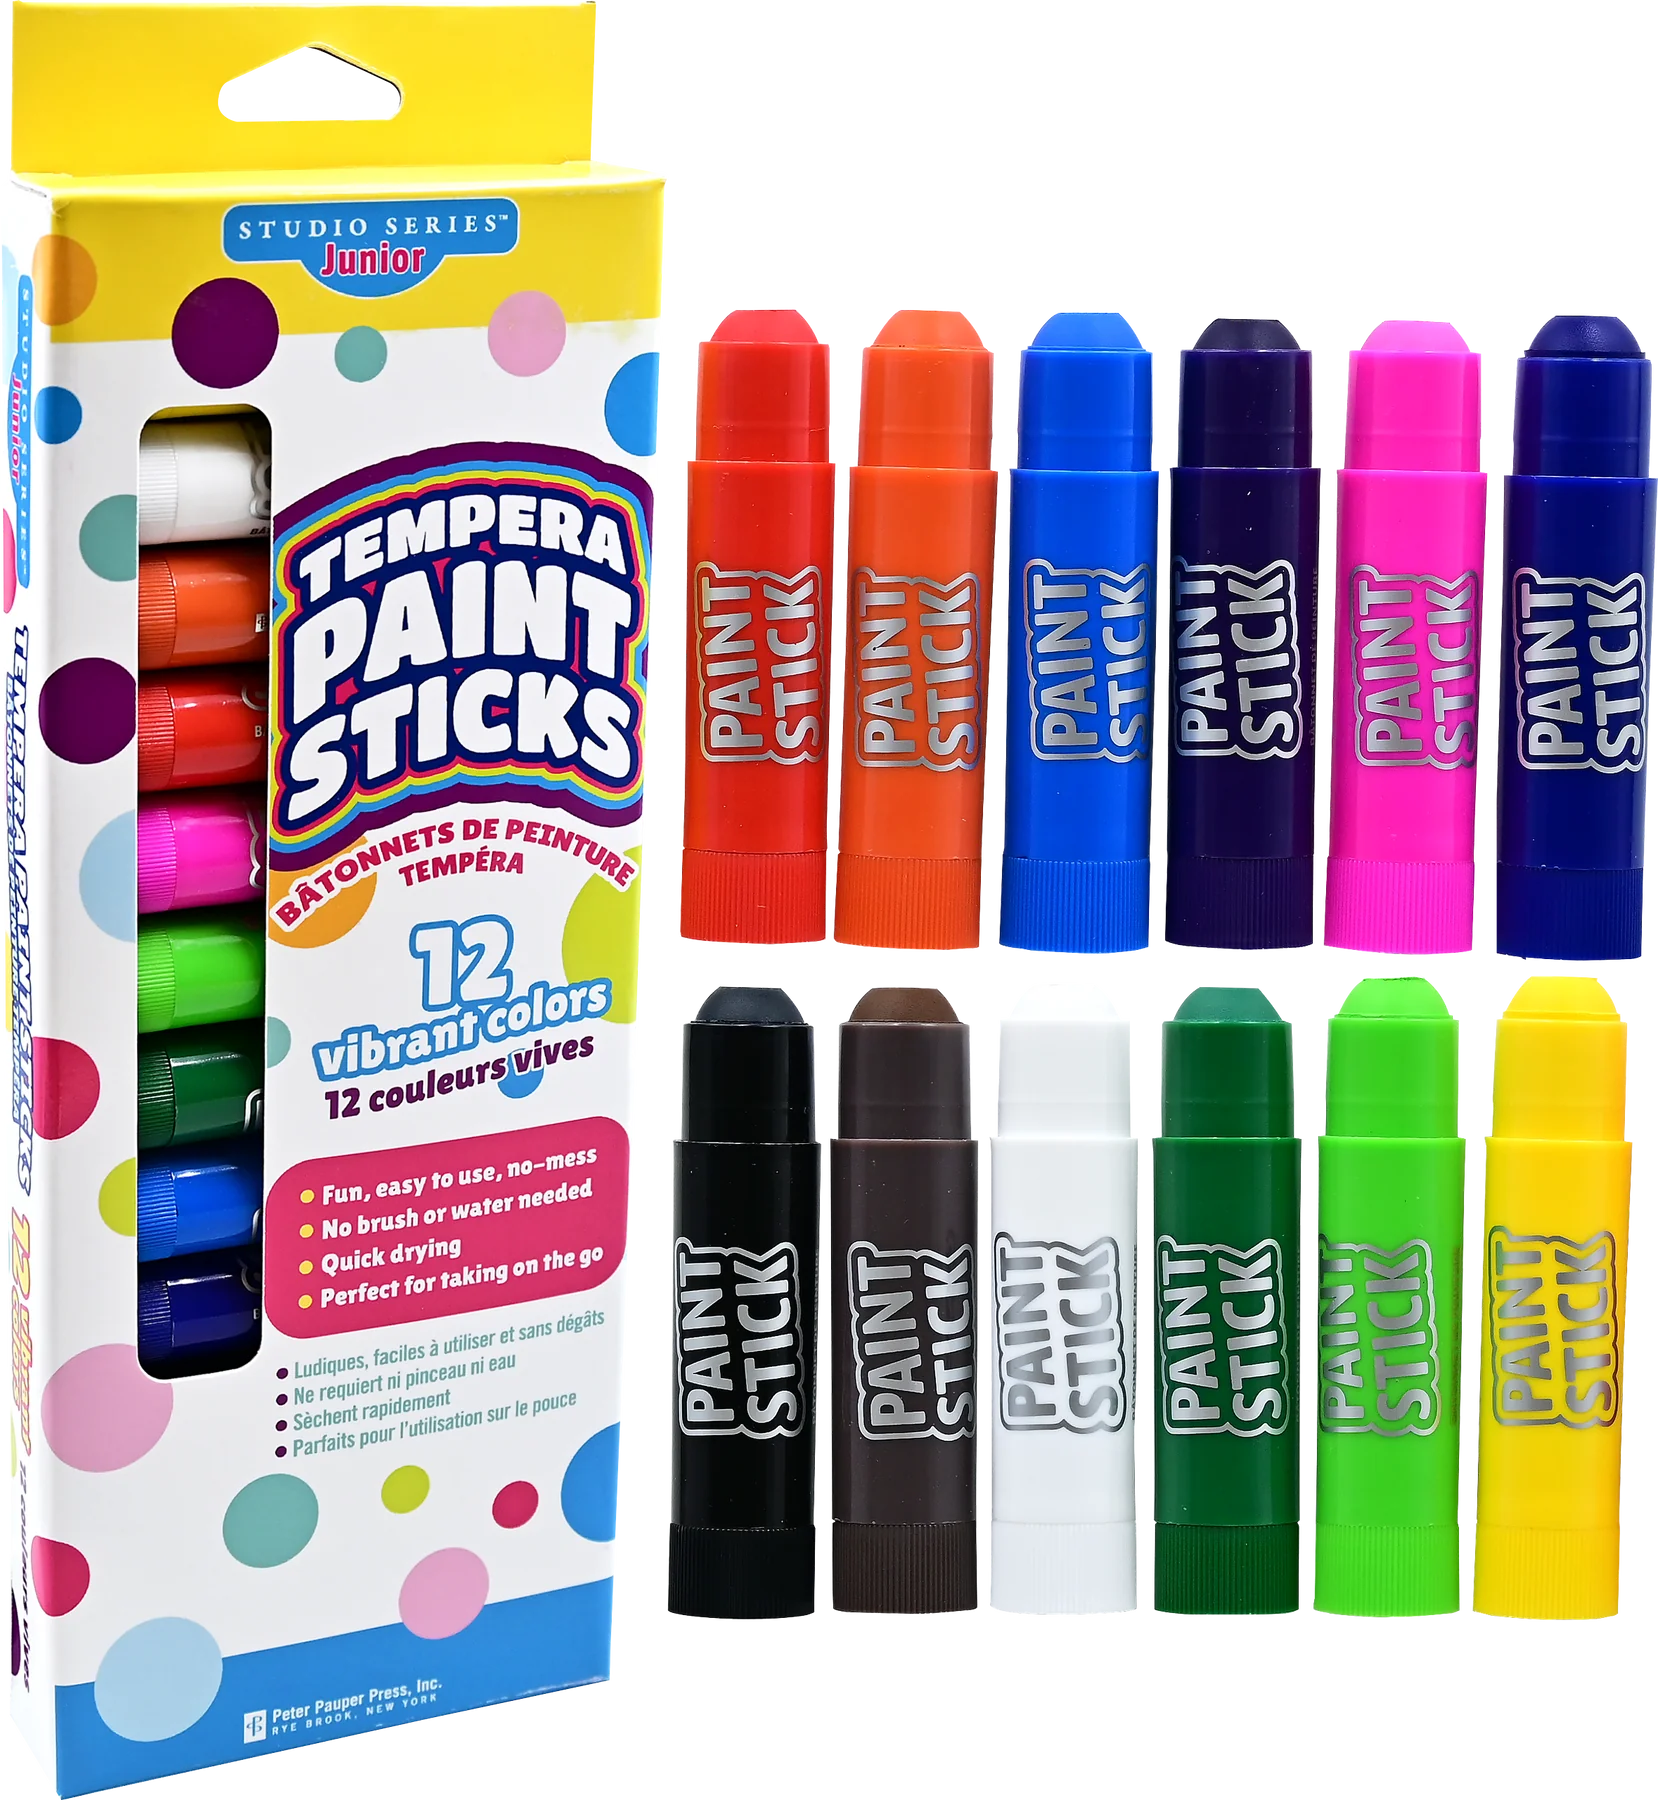 Studio Series Junior Tempera Paint Sticks (set of 12)